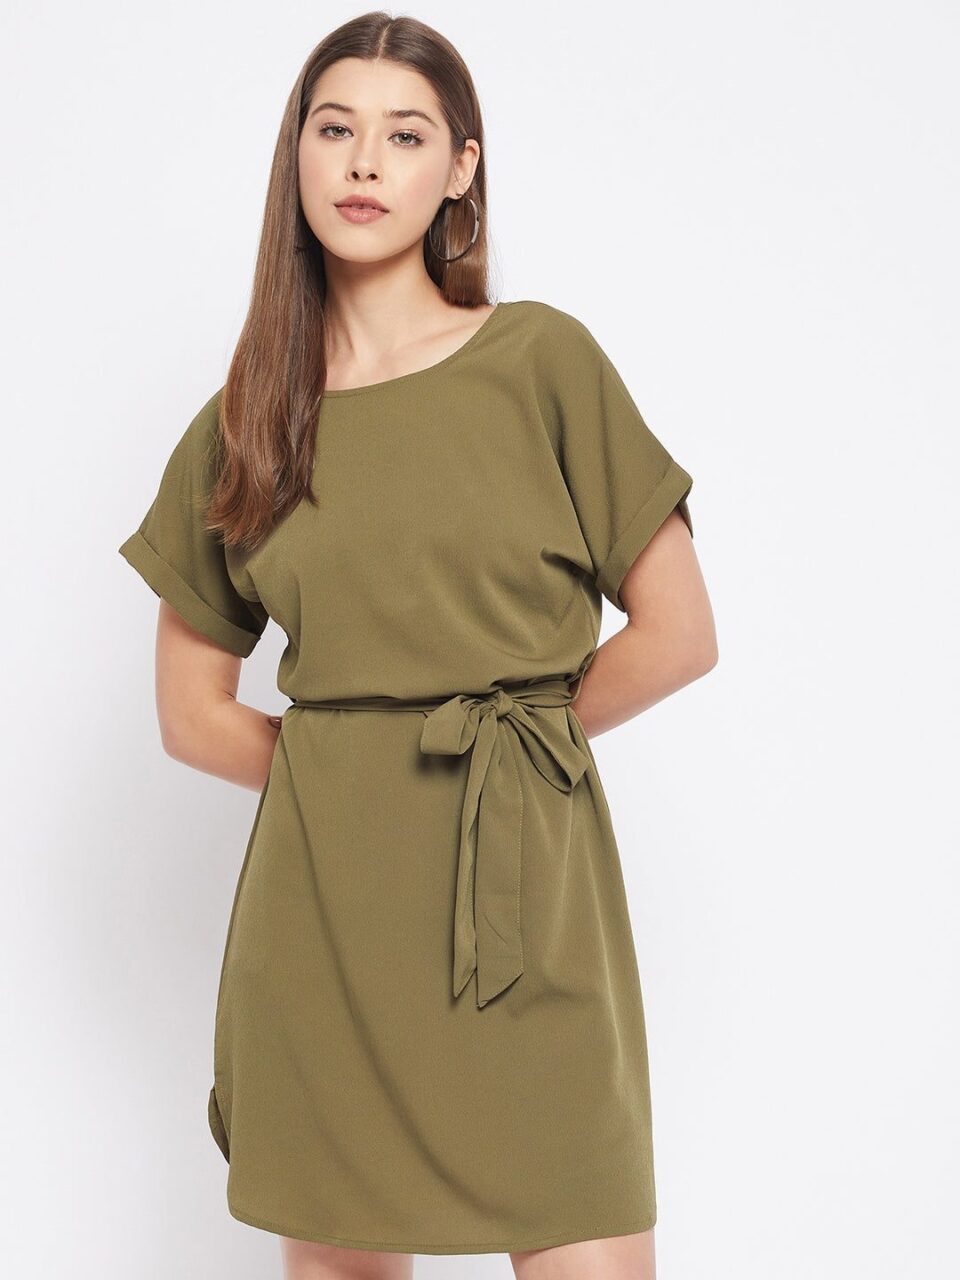 Green Sheath Crepe Solid Dress